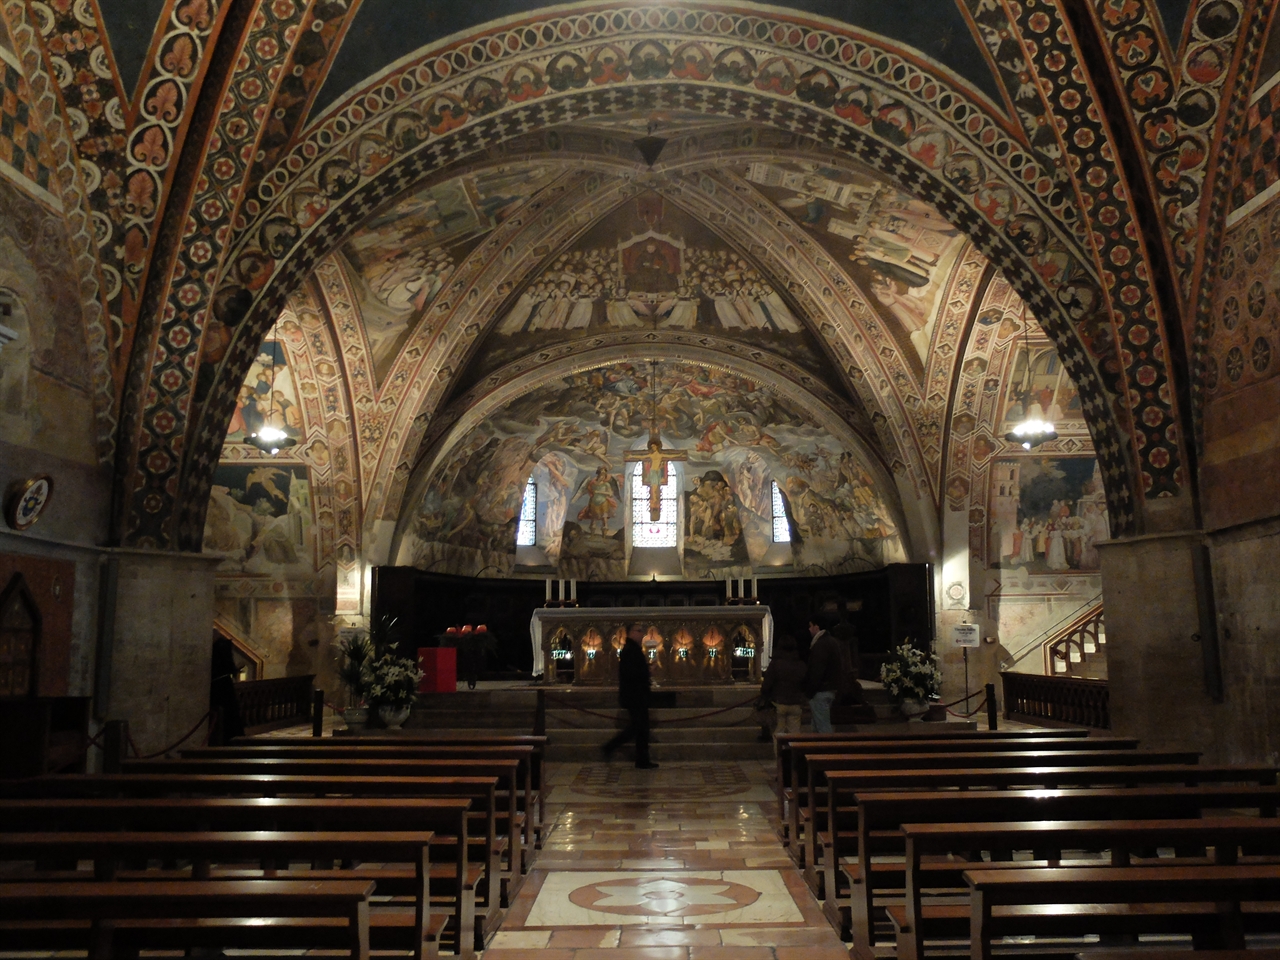 ‘산 프란체스코 성당’은 크게 두 층으로 이루어져 있는데 성 프란체스코의 무덤이 있는 하층 성당 위에 본 성당이 있습니다. 